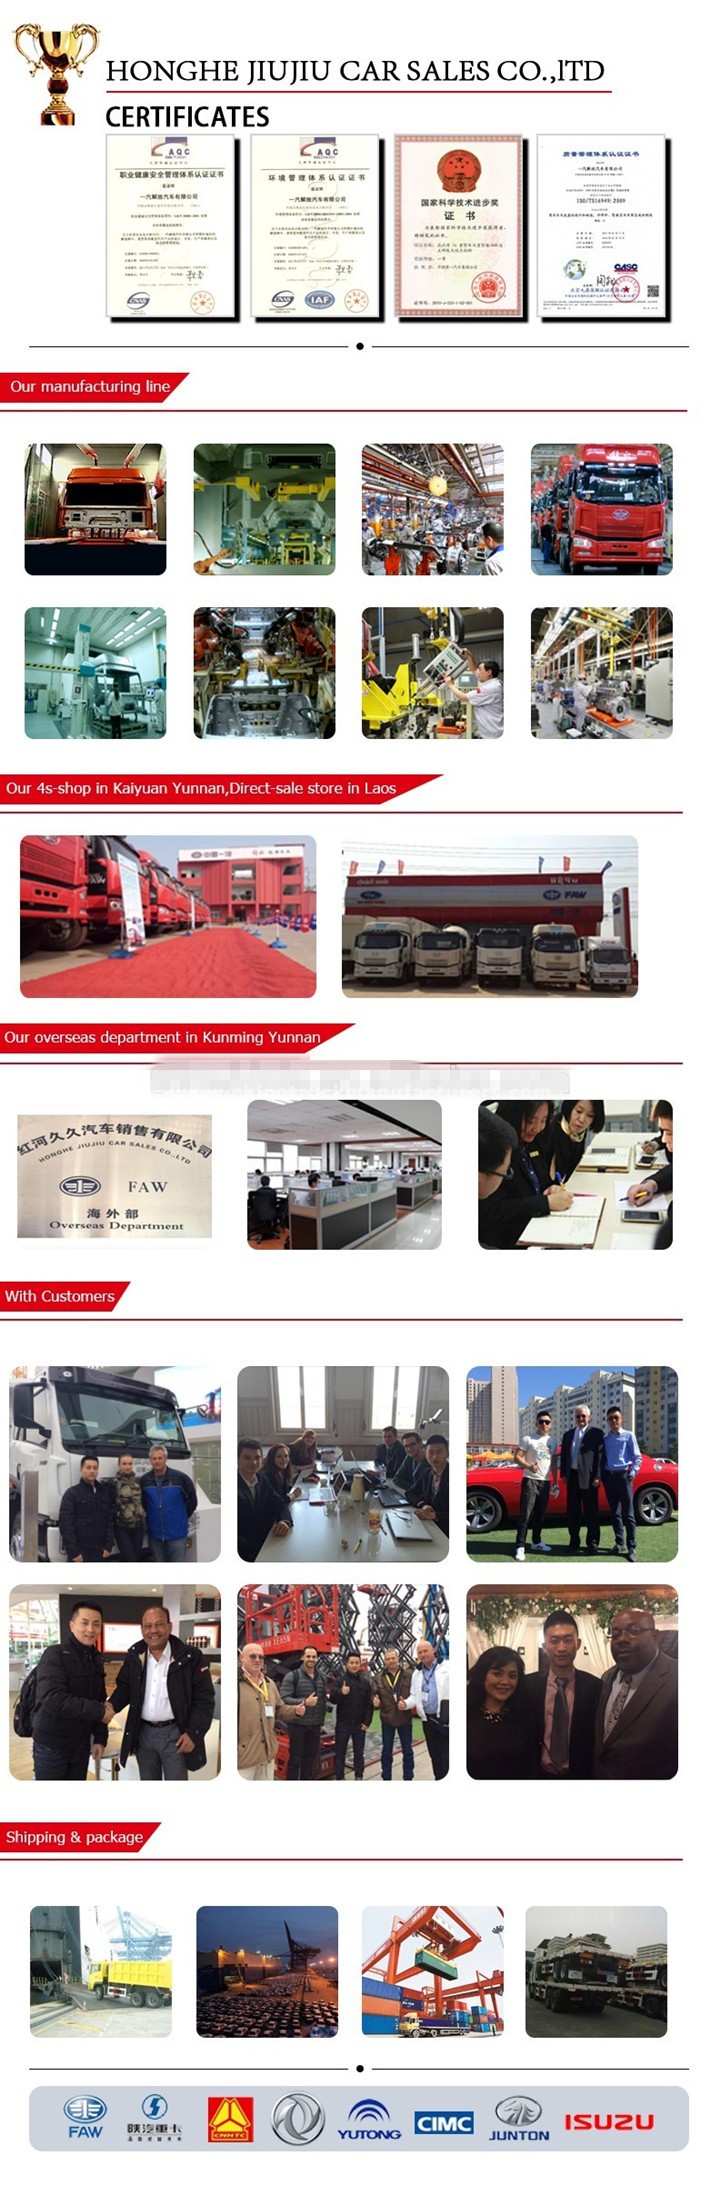 Honghe Jiu Jiu Car Sales Co., Ltd.